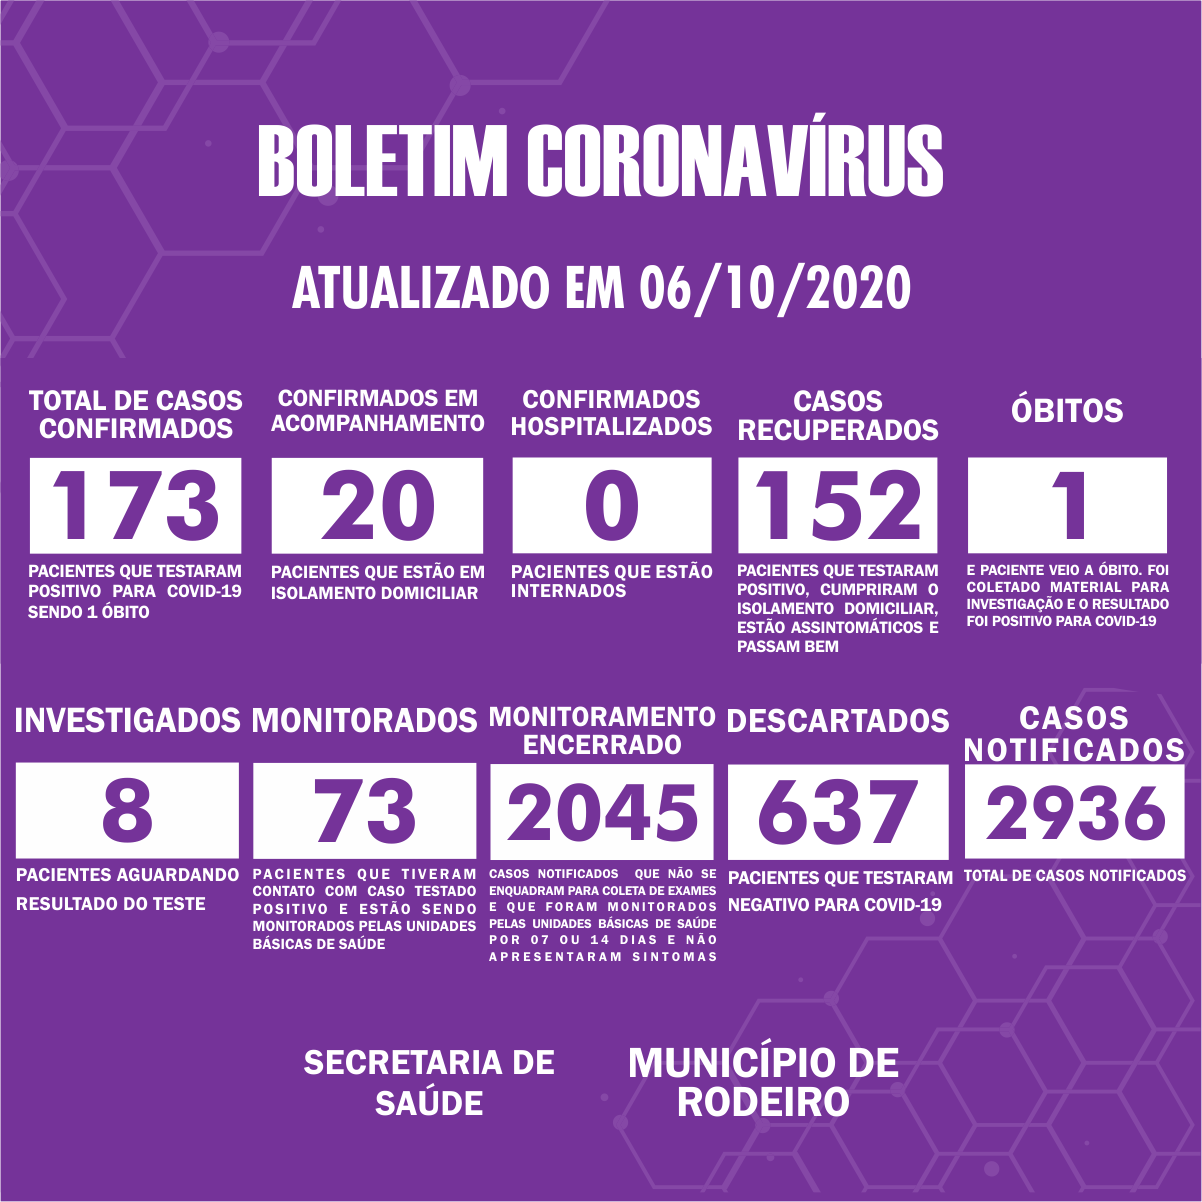 Boletim Epidemiológico do Município de Rodeiro sobre coronavírus, atualizado em 06/10/2020